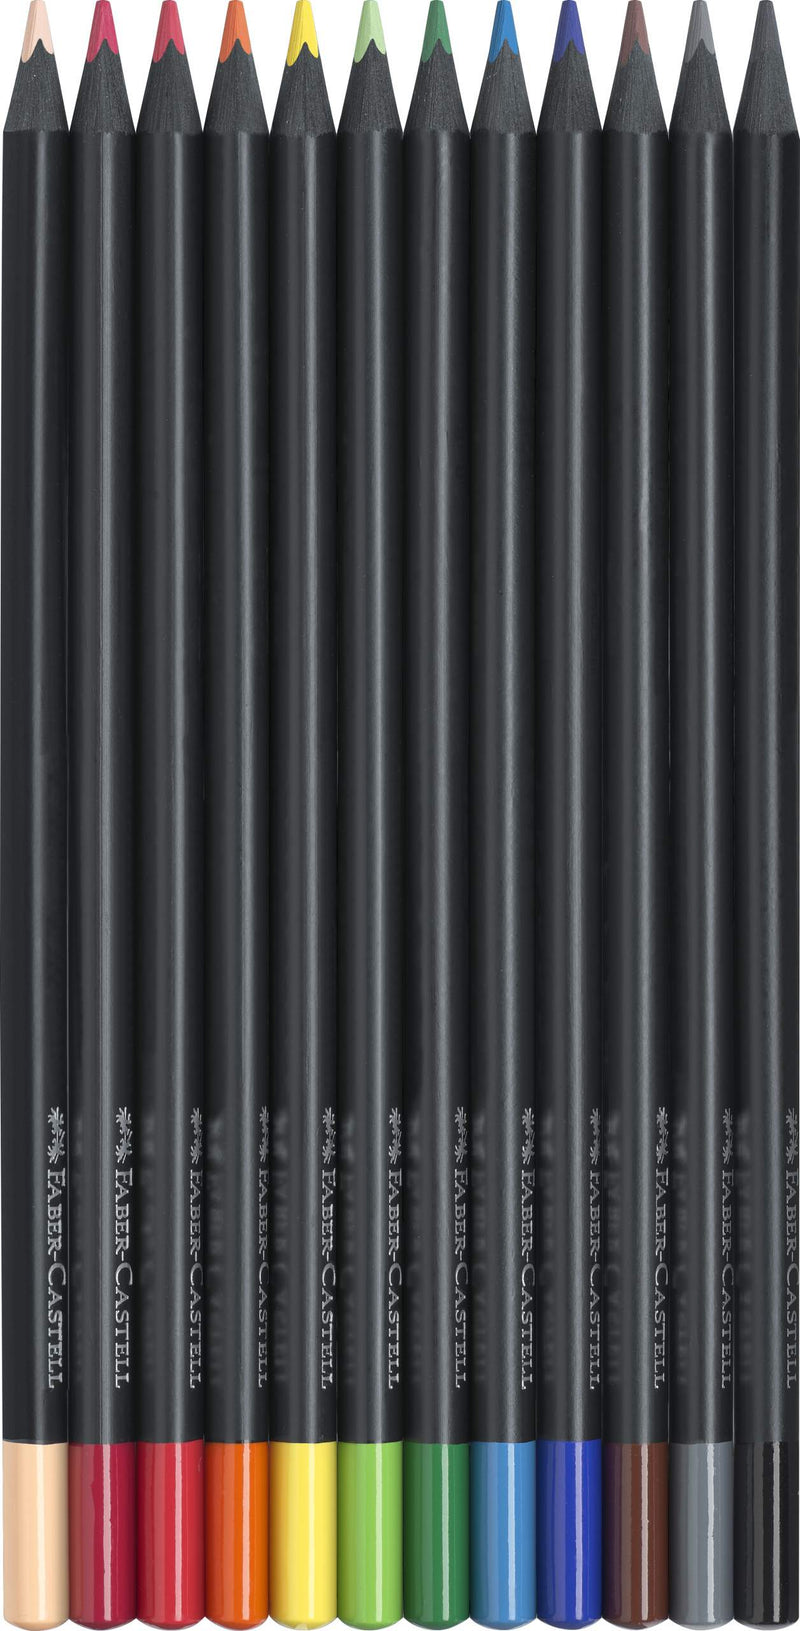 Etui de 100 crayons de couleurs Black Edition Faber-Castell